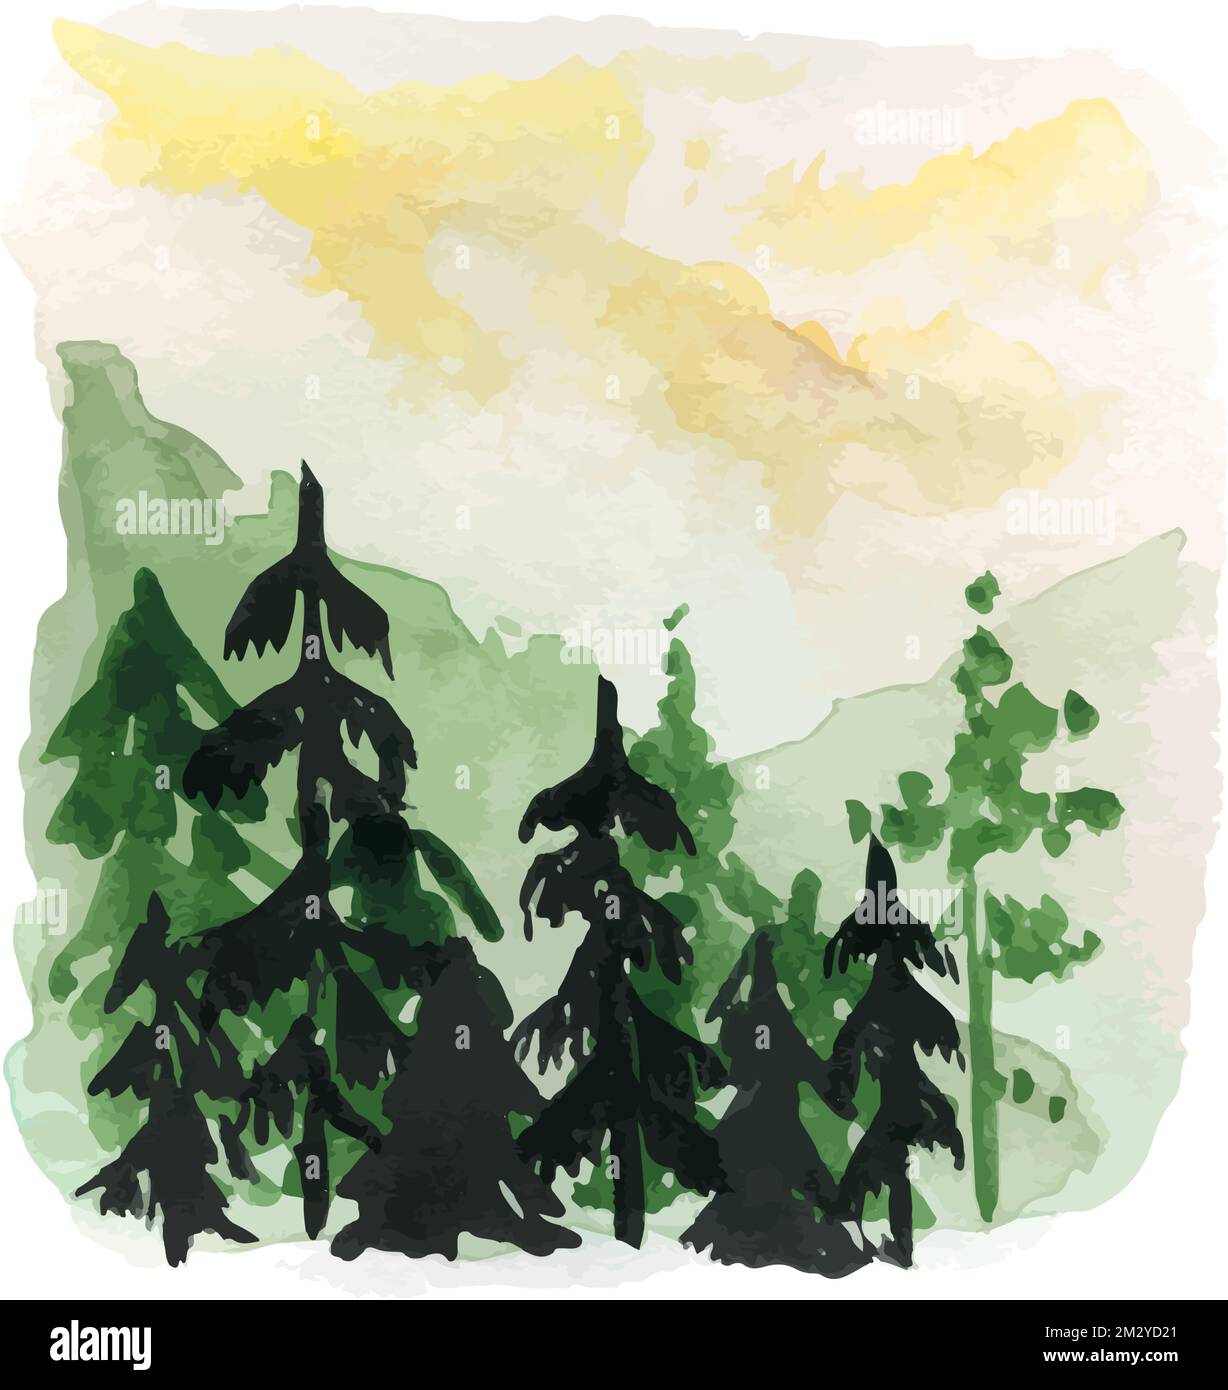 Aquarell handgezeichnete Silhouette Illustration von Fir Tree Panorama und Hazy Mountains. Der Foggy am Morgen erscheint im Valley for Design Stock Vektor